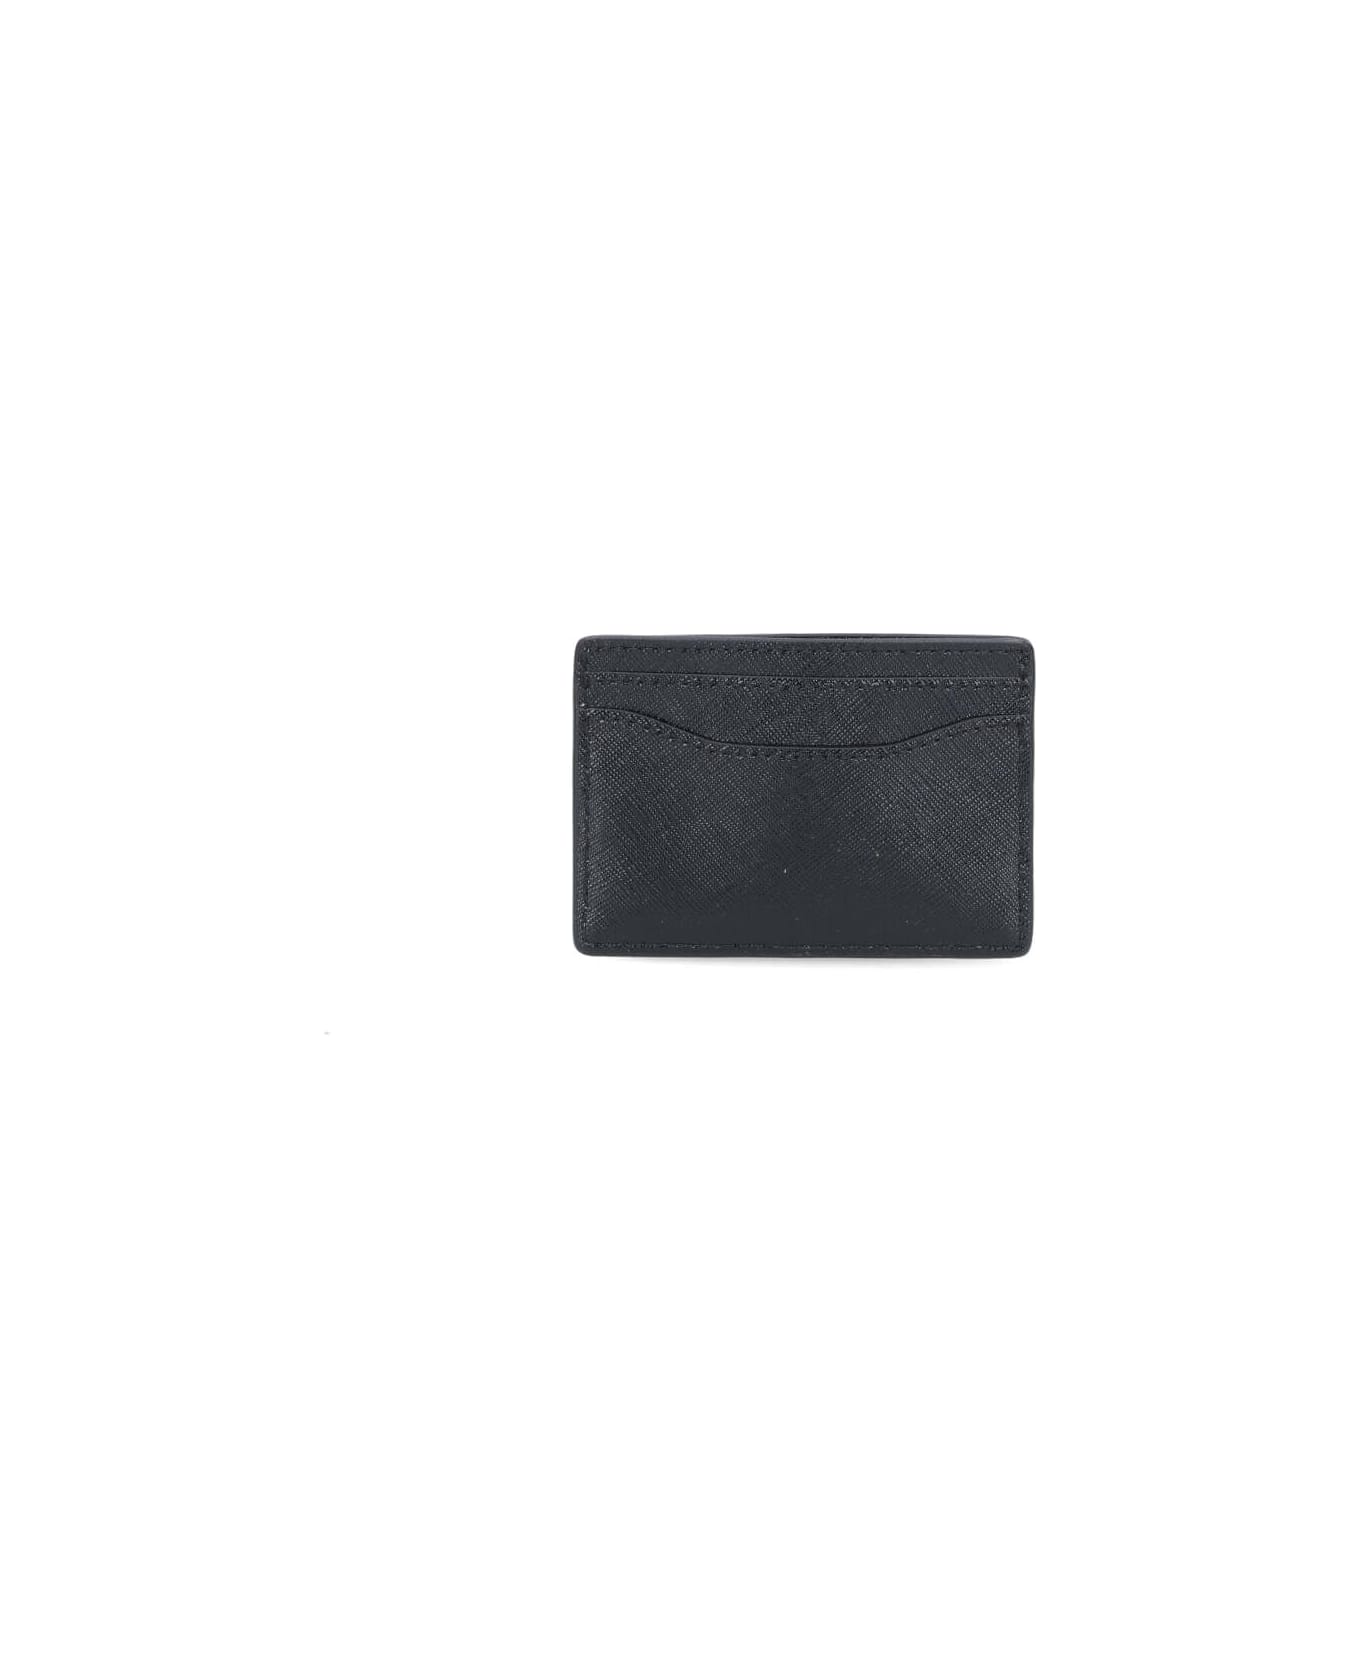 Marc Jacobs The Utility Snapshot Dtm Card Case - Black 財布